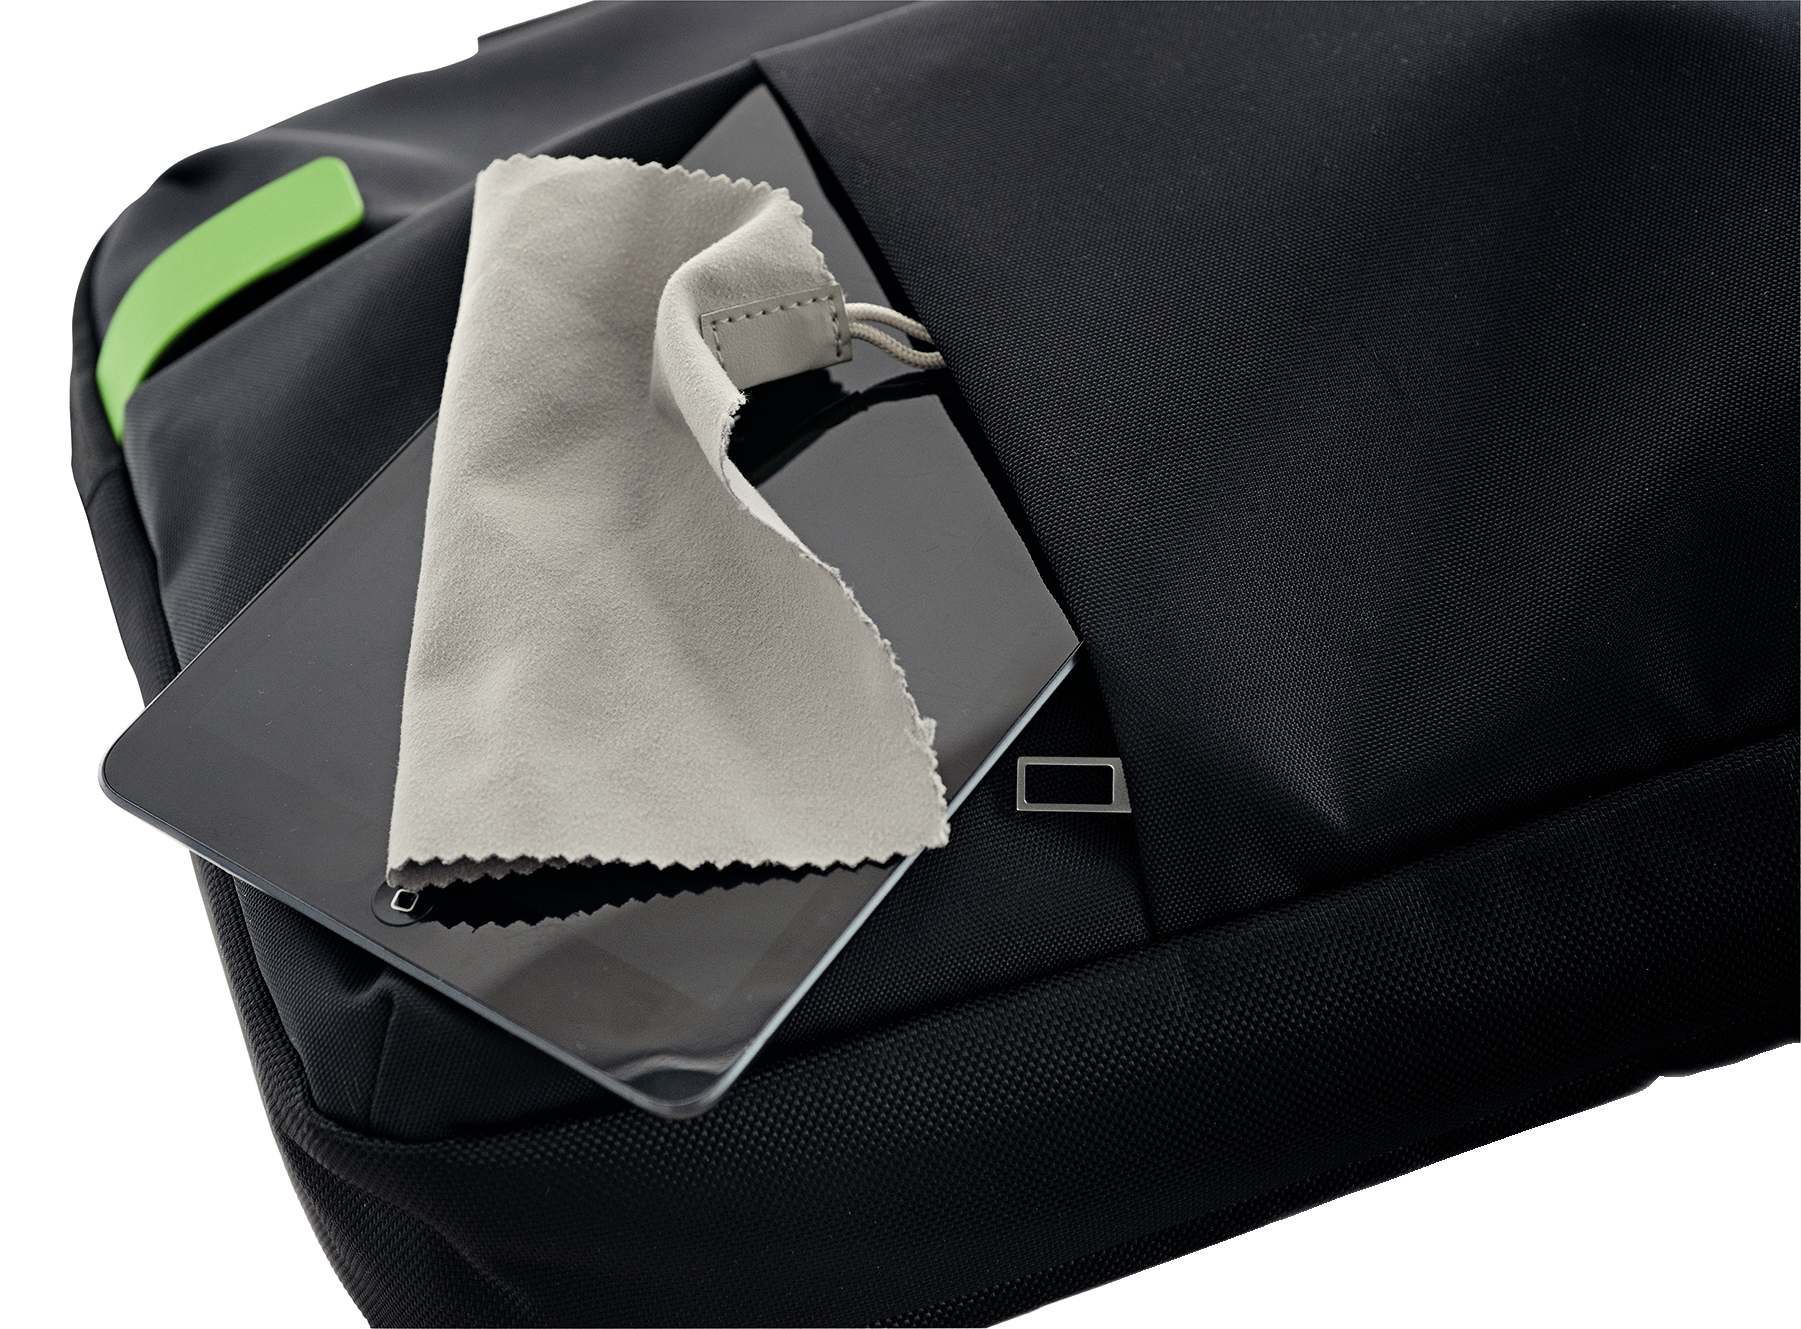 Aktentasche Polyester, Universal LEITZ Notebooktasche Traveller schwarz Smart für Complete